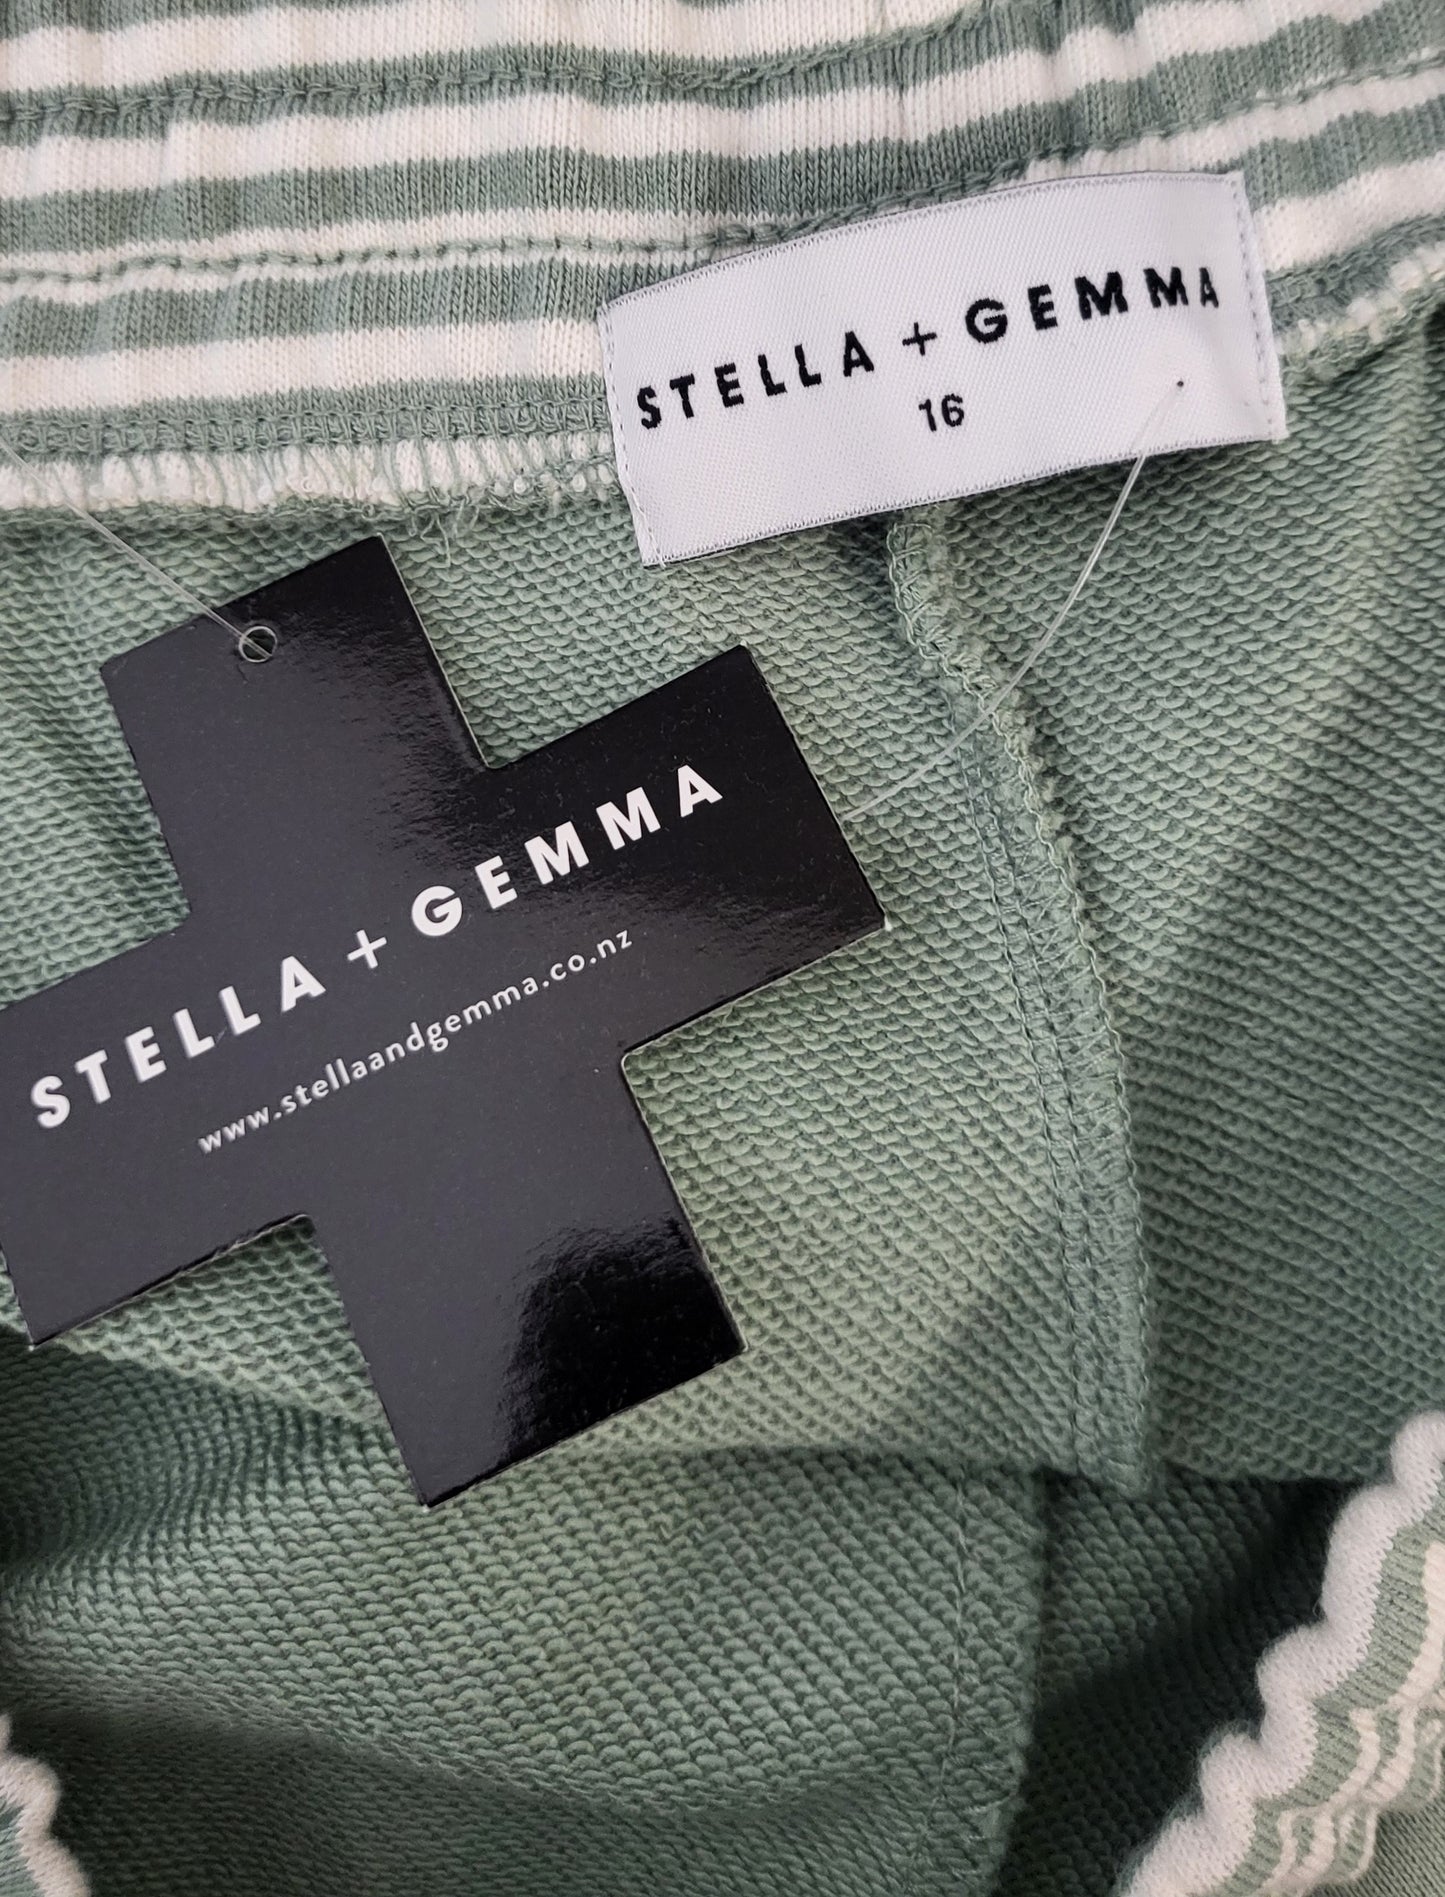 Stella+Gemma Green Track Pants BNWT (16)